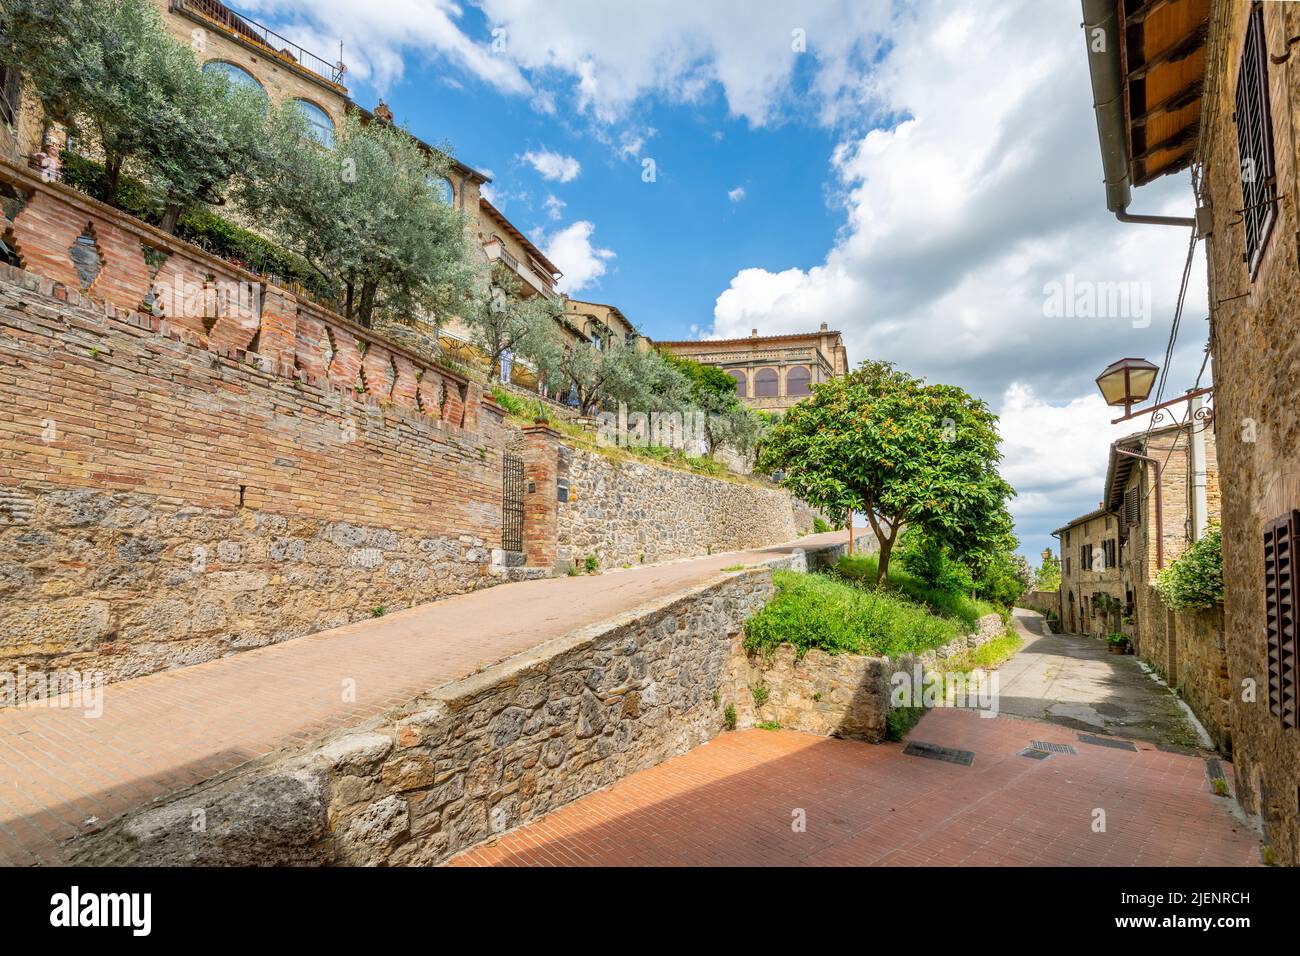 Ruelles et ruelles étroites à l'intérieur des murs de la ville médiévale de San Gimignano, en Italie, dans la région toscane. Banque D'Images